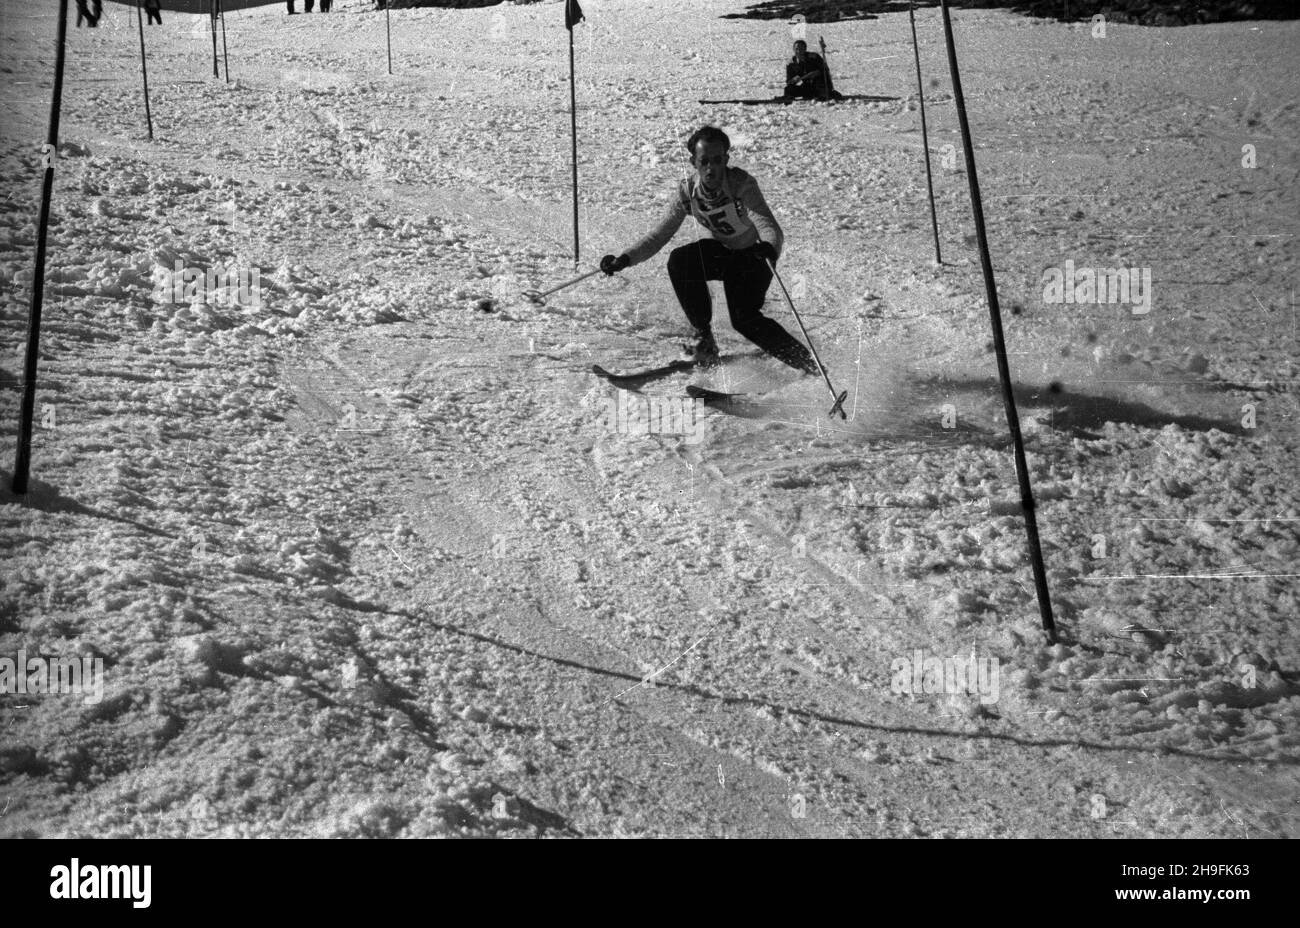 Karpacz, 1948-02-21. W dniach 19-23 lutego odbywa³y siê XXIII Mistrzostwa Narciarskie Polski. Slalom mê¿czyzn wygra³ Józef Marusarz (SNPTT Zakopane). Nz. jeden z zawodników slalomu na trasie przejazdu. pw  PAP      Karpacz, Feb. 21, 1948. The 23rd Poland's Skiing Championship was held on February 19-23. Jozef Marusarz (SNPTT Zakopane) won men's slalom. Pictured: a slalom   contender.  pw  PAP Stock Photo